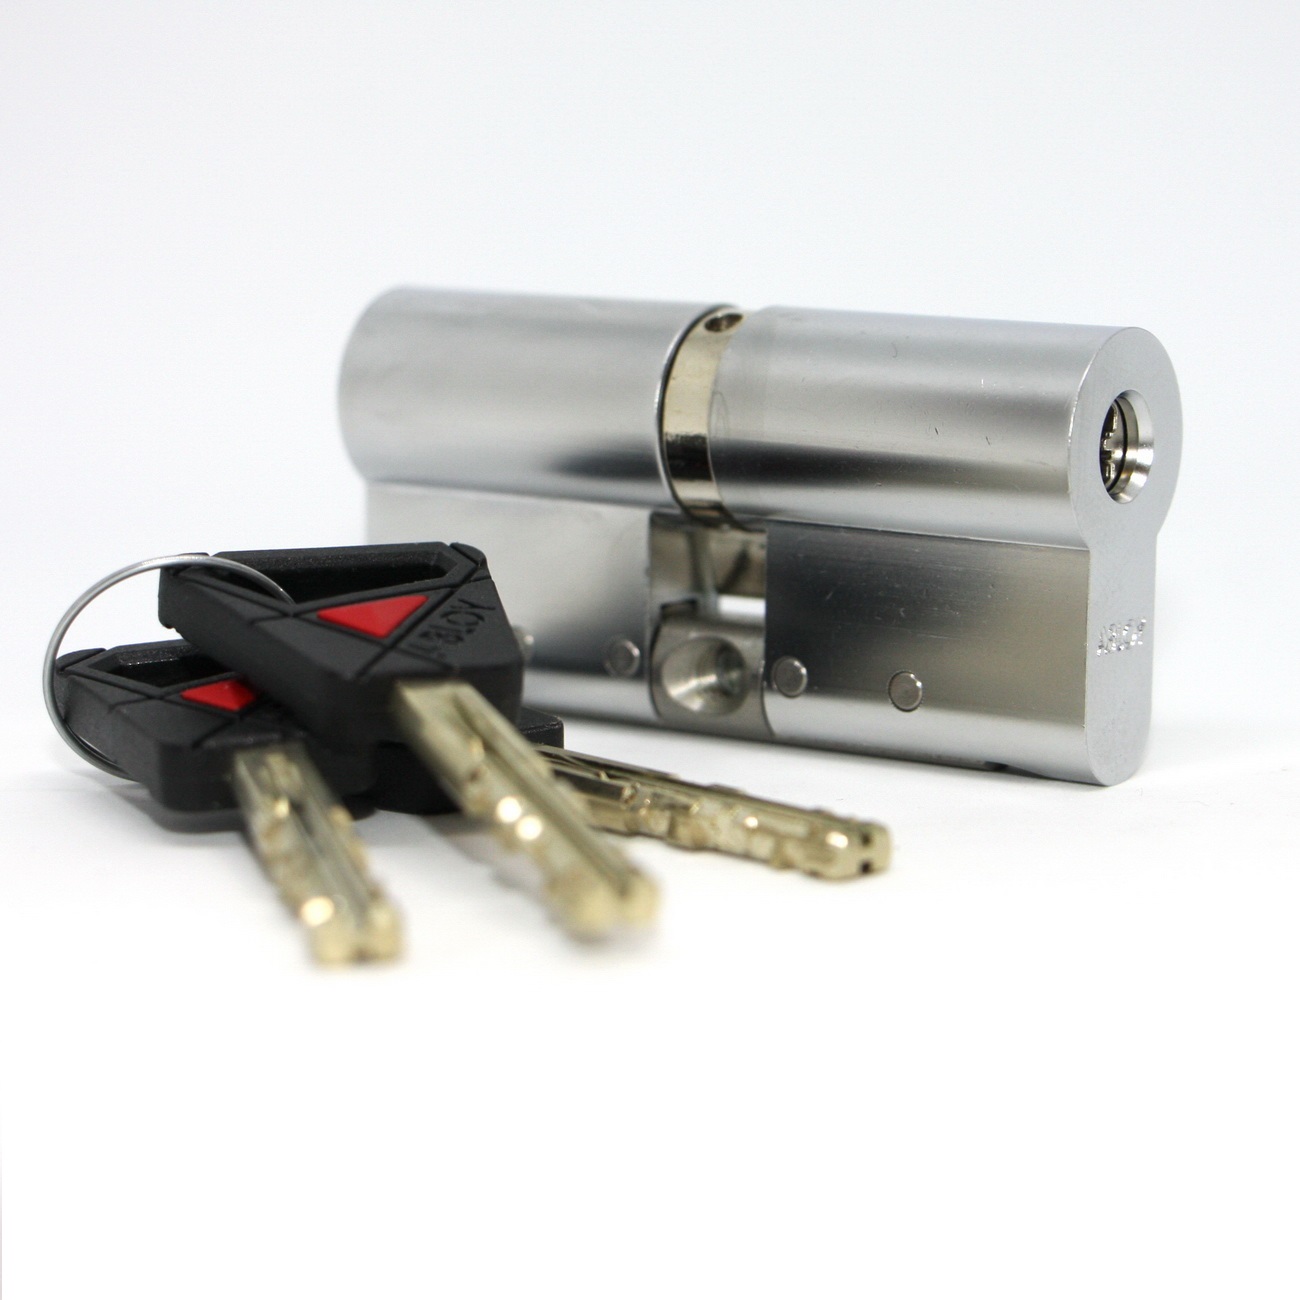 CY 322 U  satin chrome/ цилиндр ключ+ключ от производителя Аблой